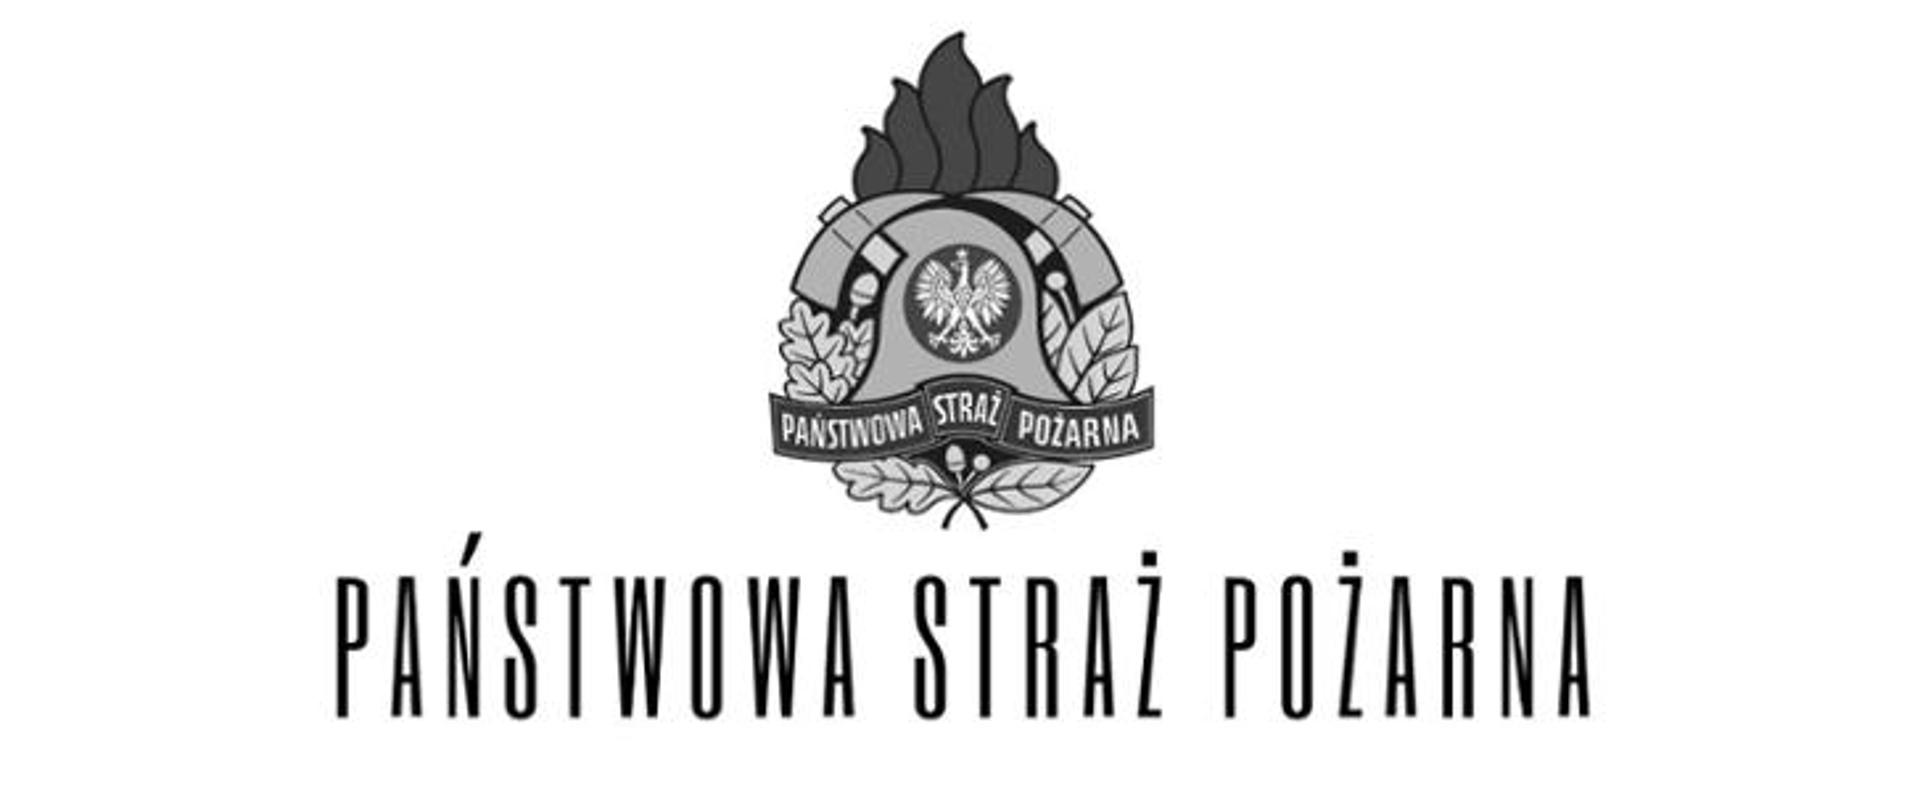 Zdjęcie przedstawia czarno-białe logo Państwowej Straży Pożarnej wraz z podpisem "Państwowa Straż Pożarna"